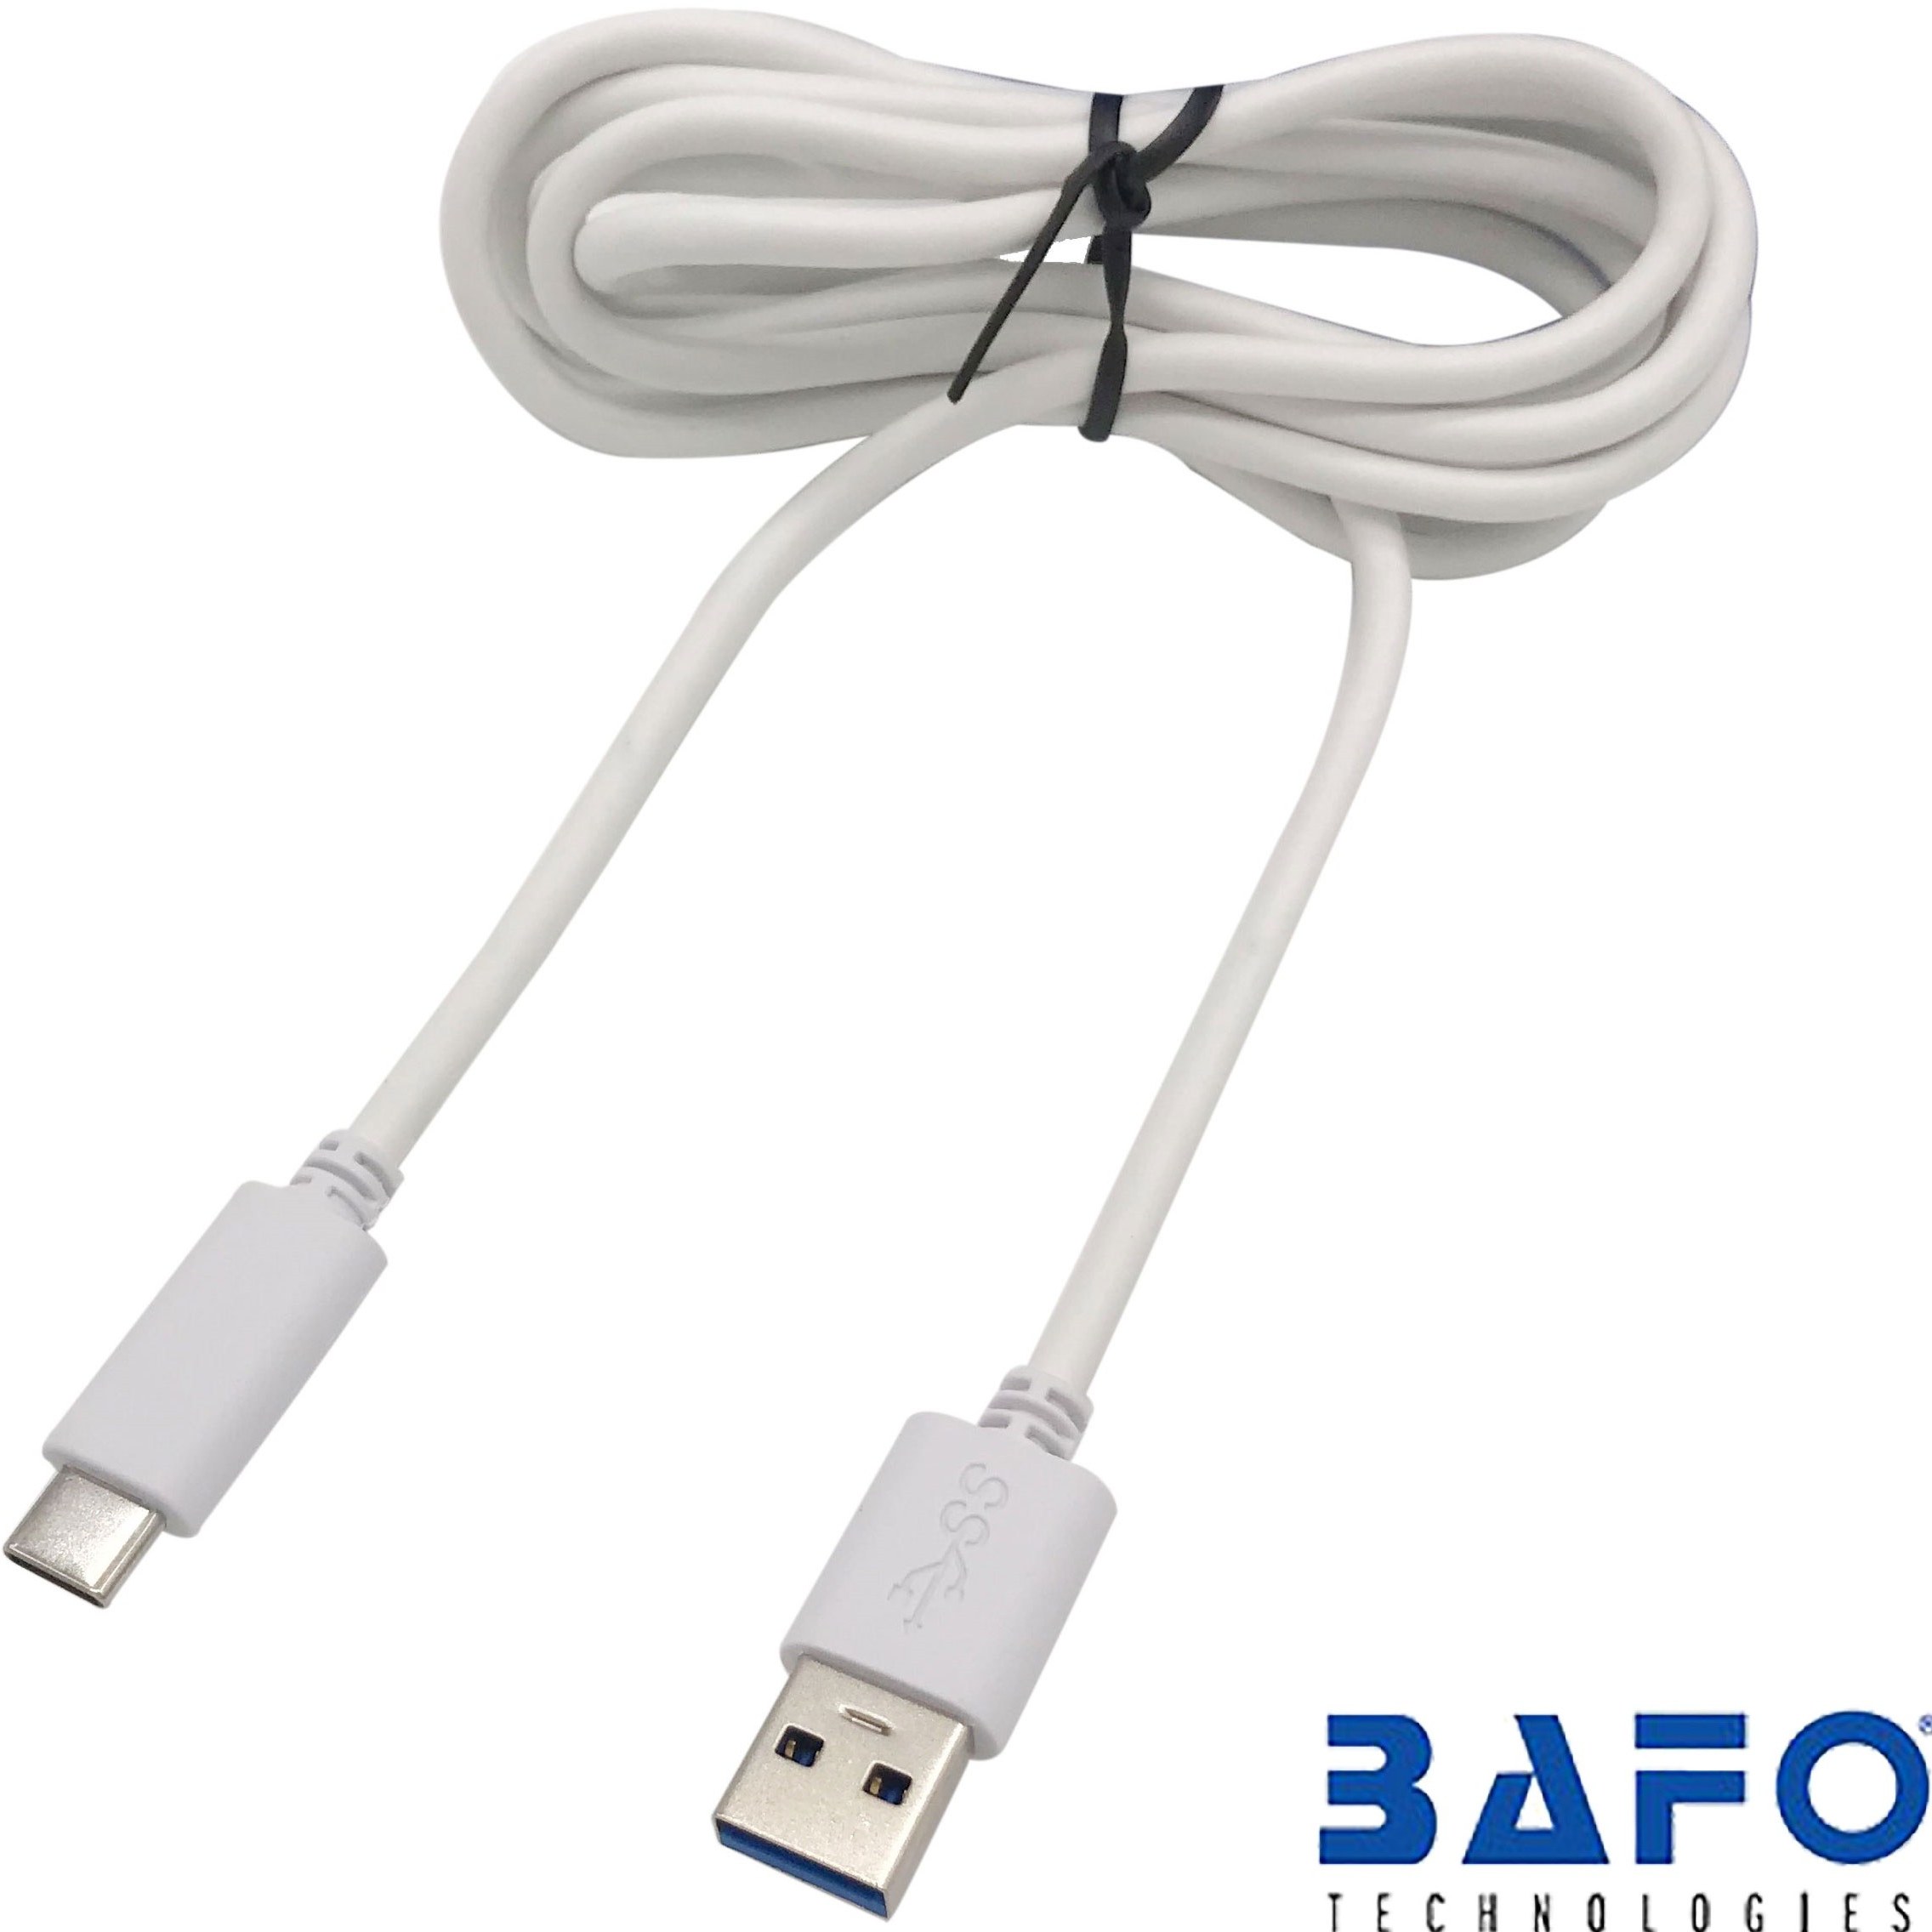 خرید و قیمت کابل 1.5 متری Type-C بافو BF-H387 ا BAFO BF-H387 1.5m USB ToType-C Data/Charging Cable | ترب